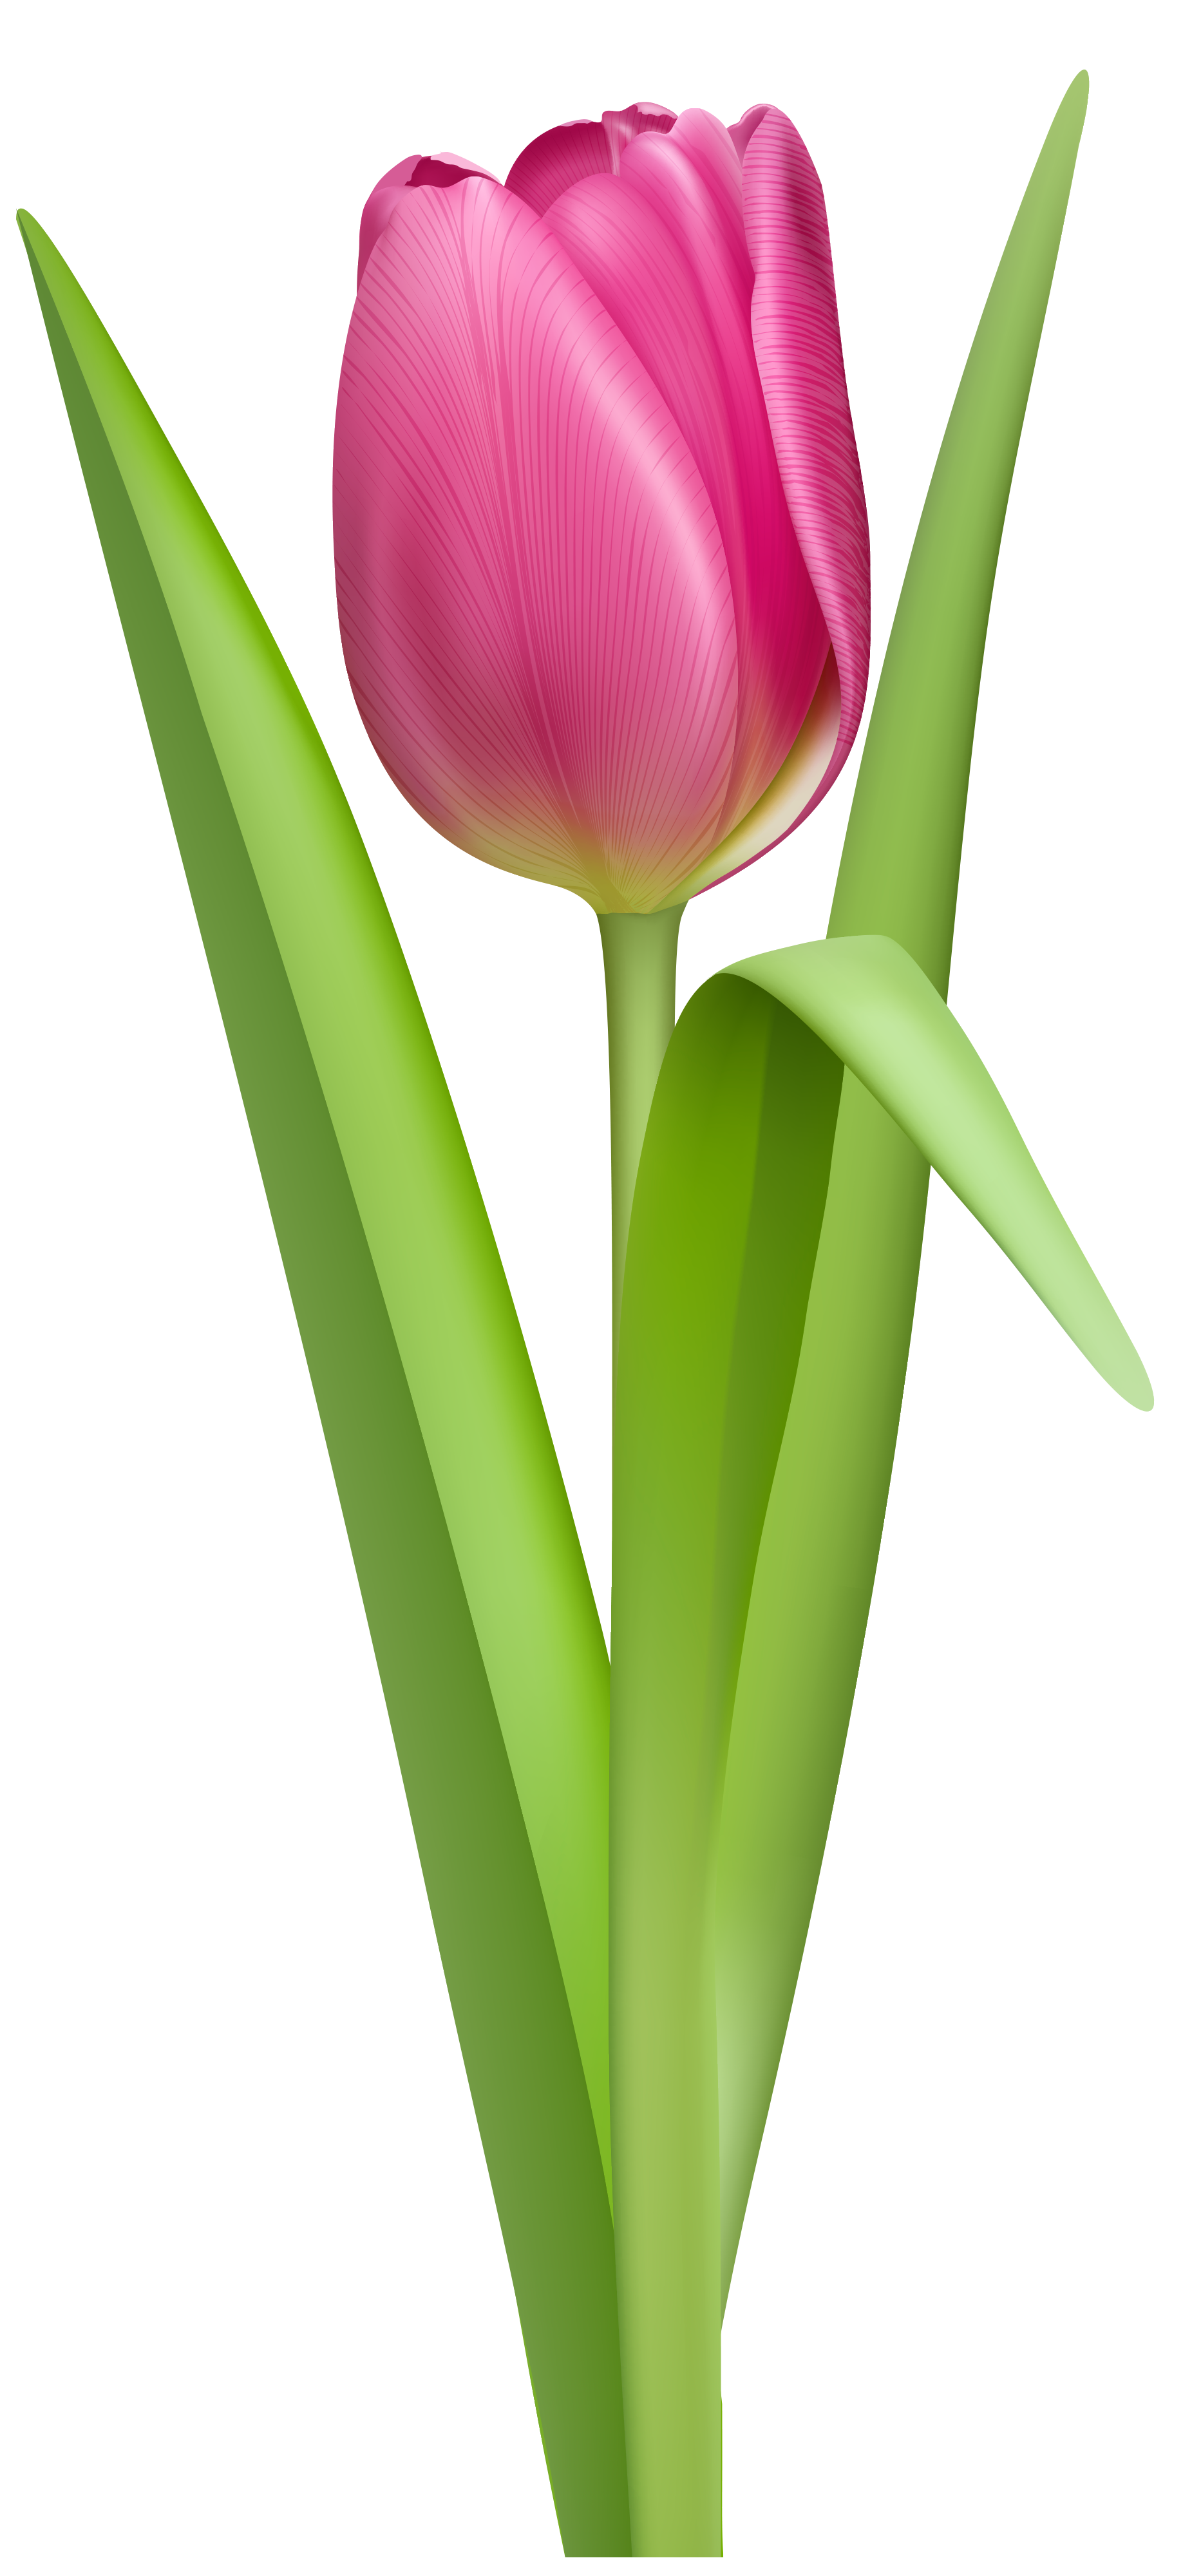 Single white tulip photo